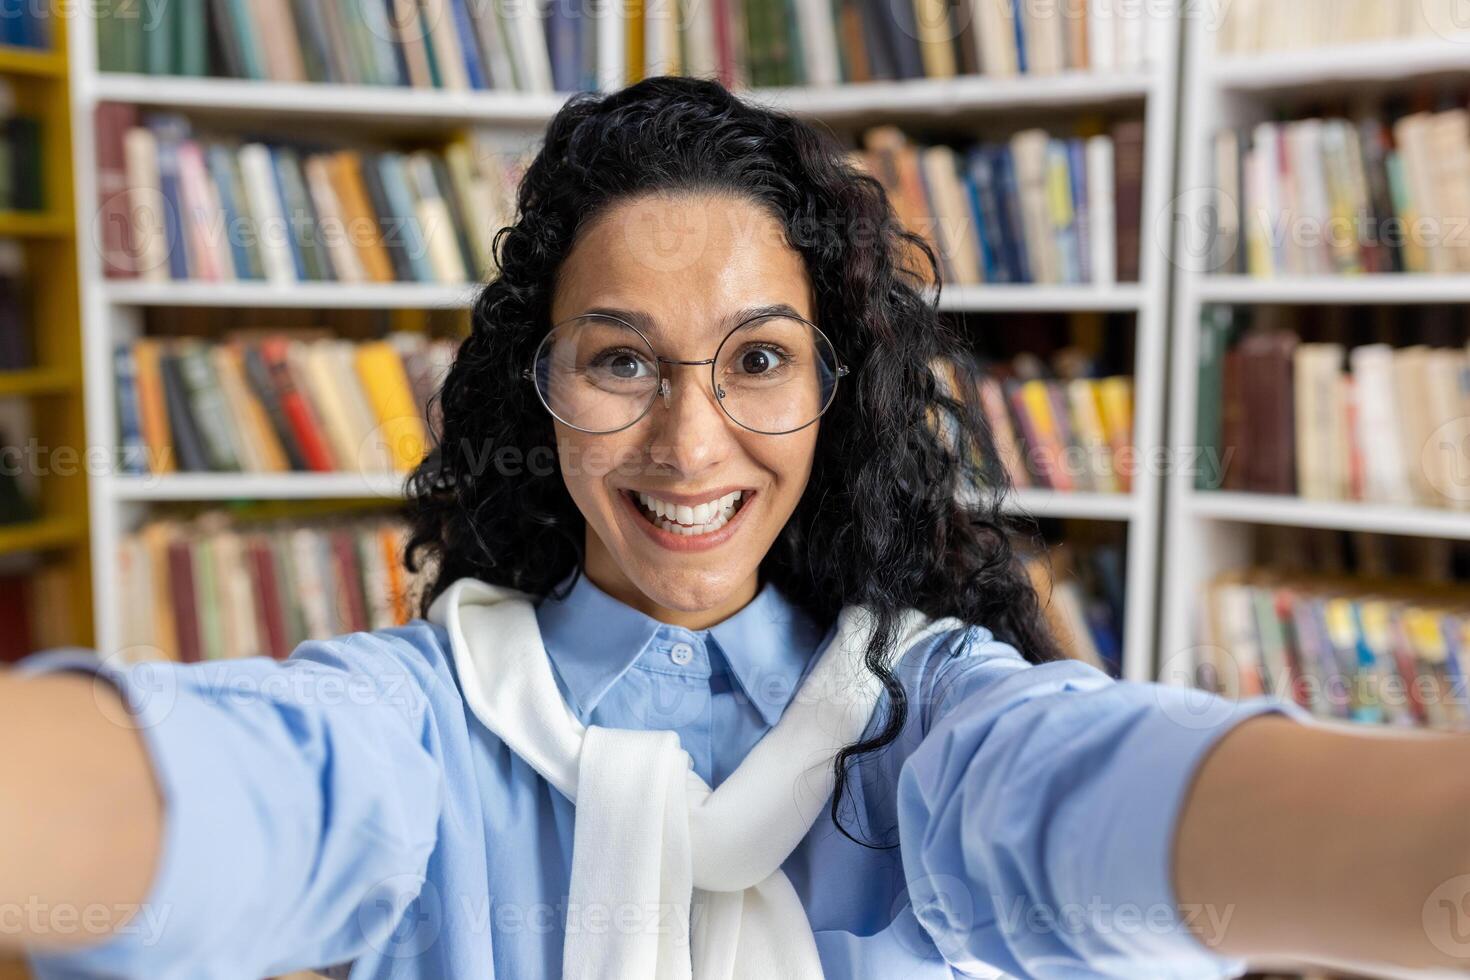 confidente Hispano estudiante capturas un selfie momento rodeado por libros en un biblioteca configuración, retratar conocimiento y educación. foto